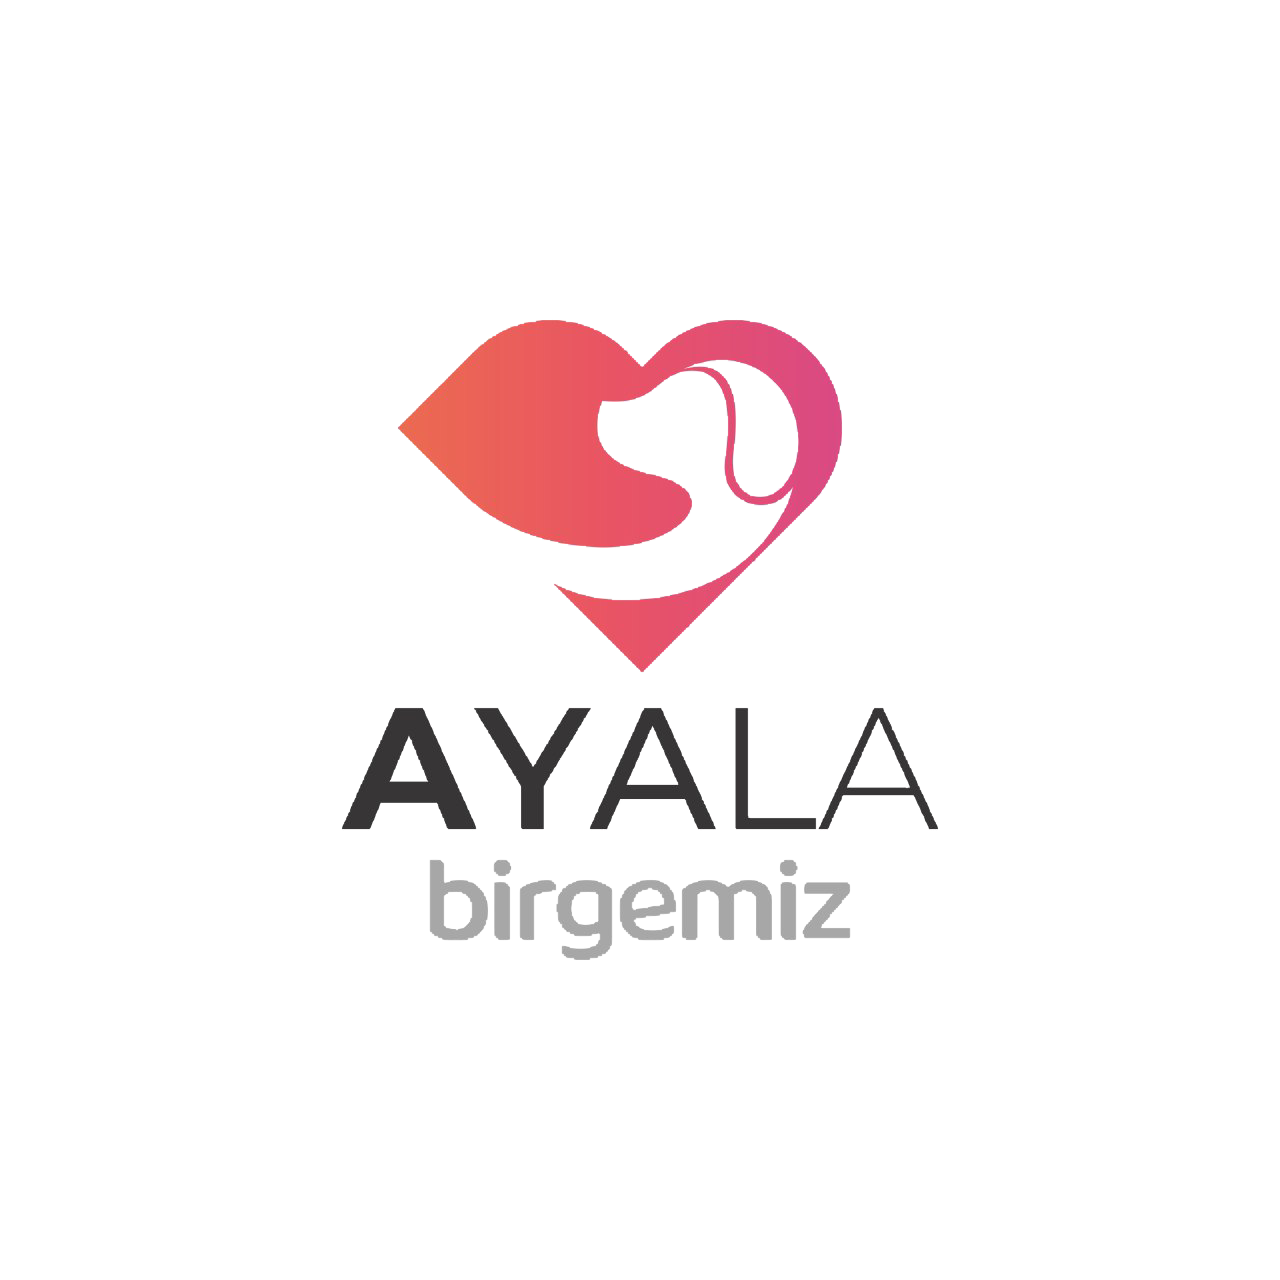 Birgemiz: Ayala